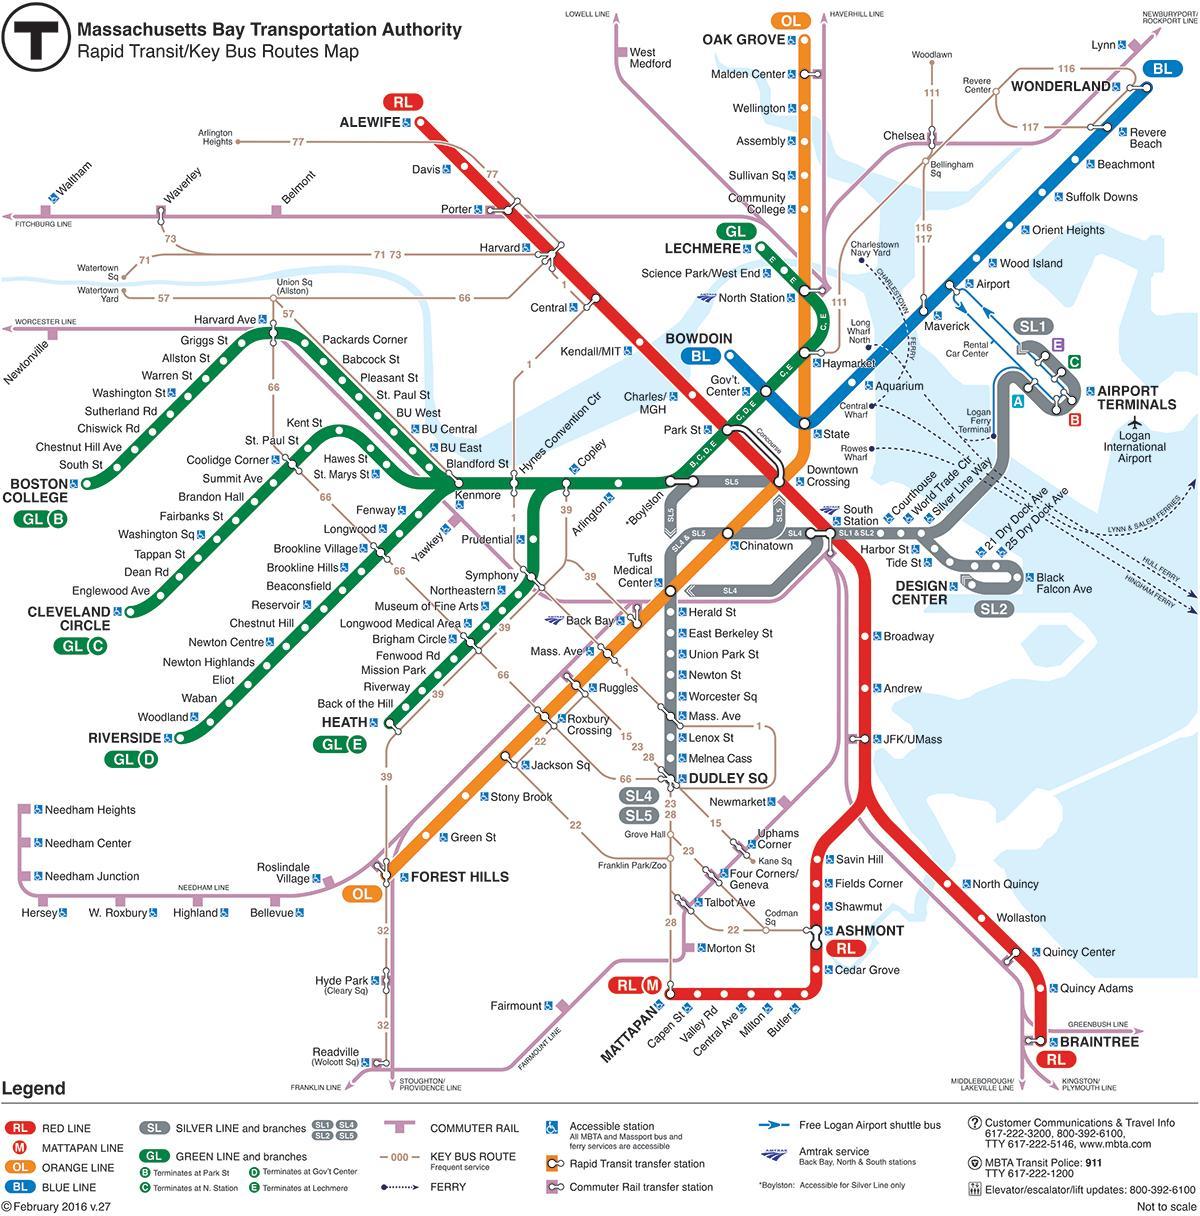 MBTA hartë vijën e kuqe